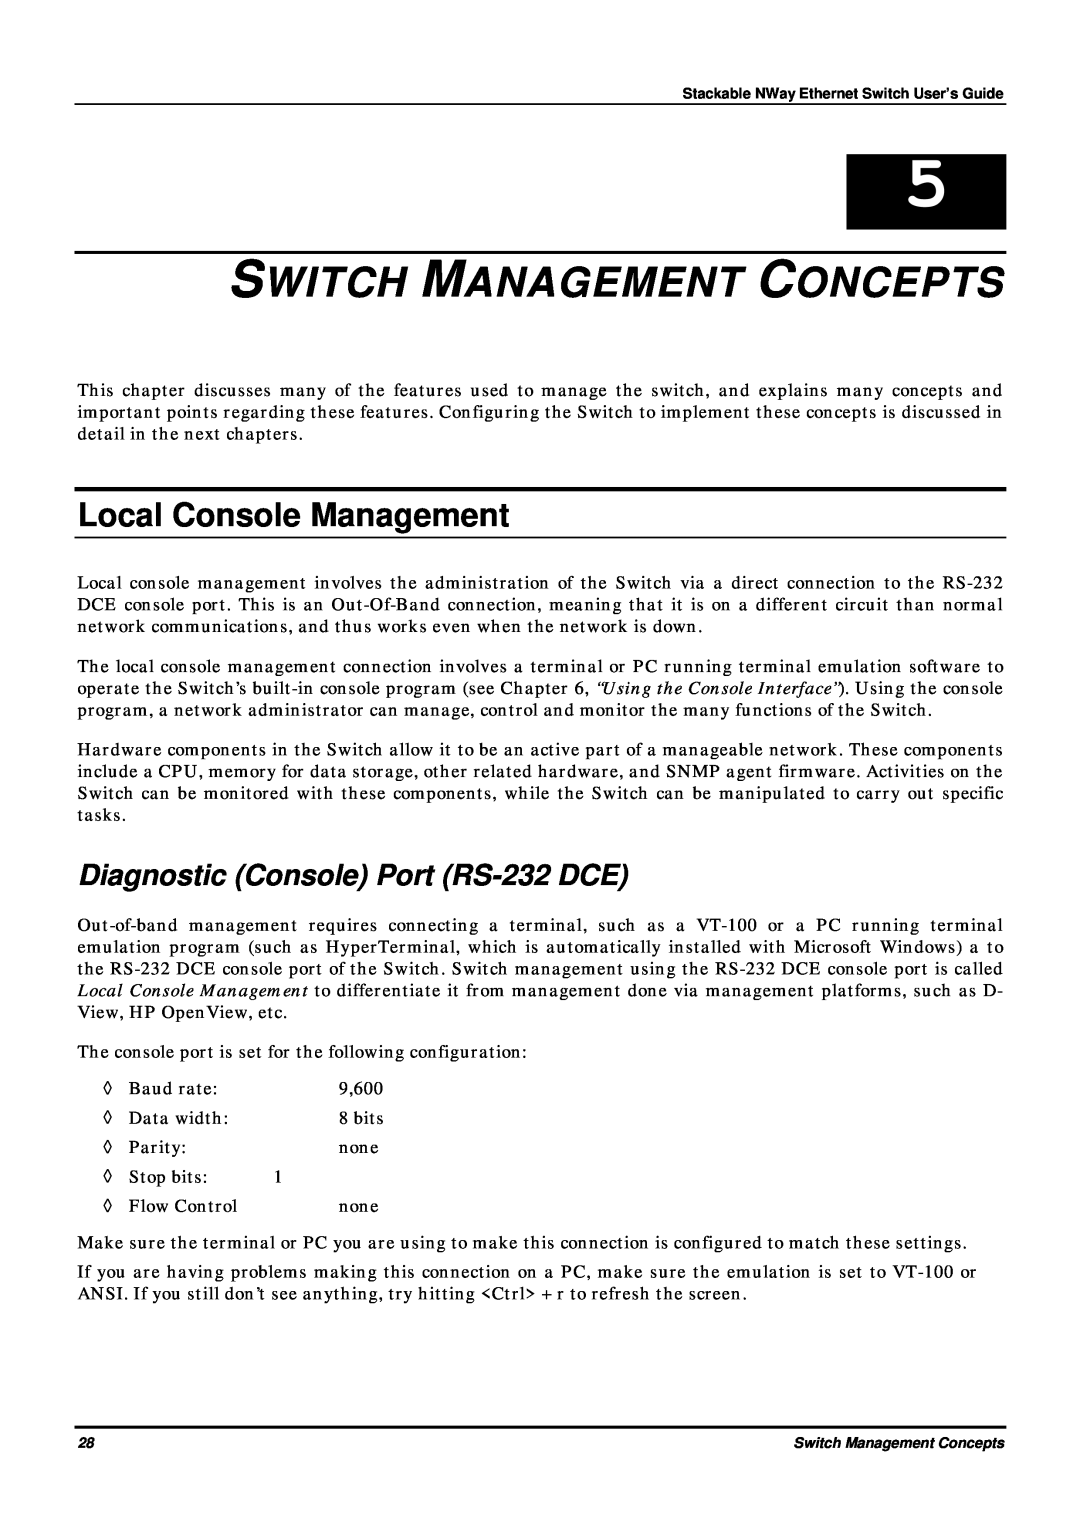 D-Link DES-3624 manual Switch Management Concepts, Local Console Management, Diagnostic Console Port RS-232 DCE 